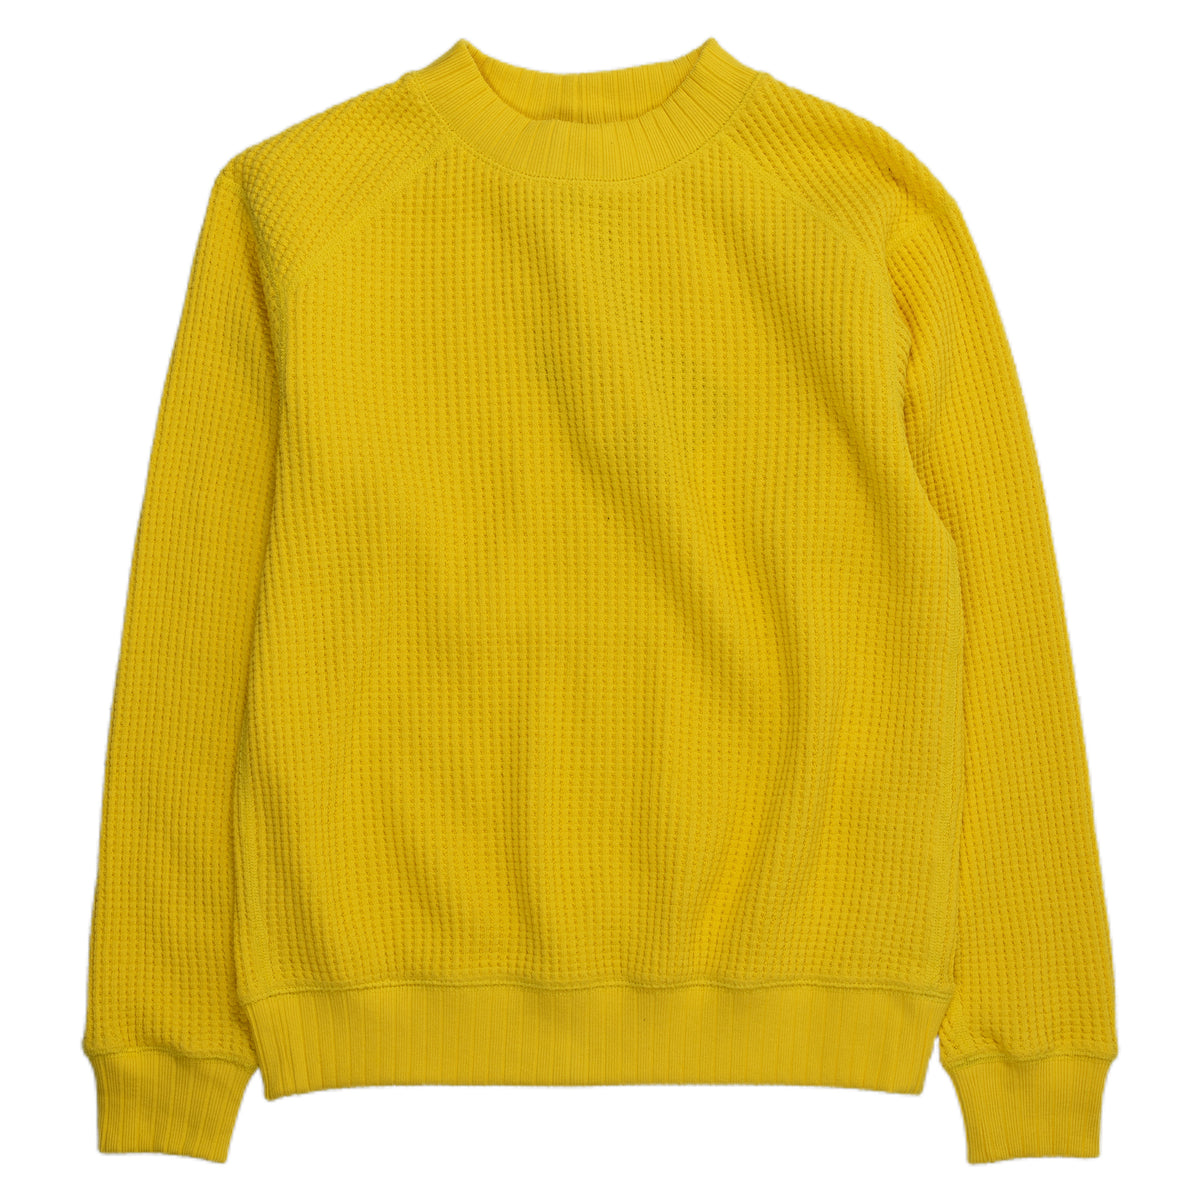 jackman waffle midneck knit sweater yellow corn